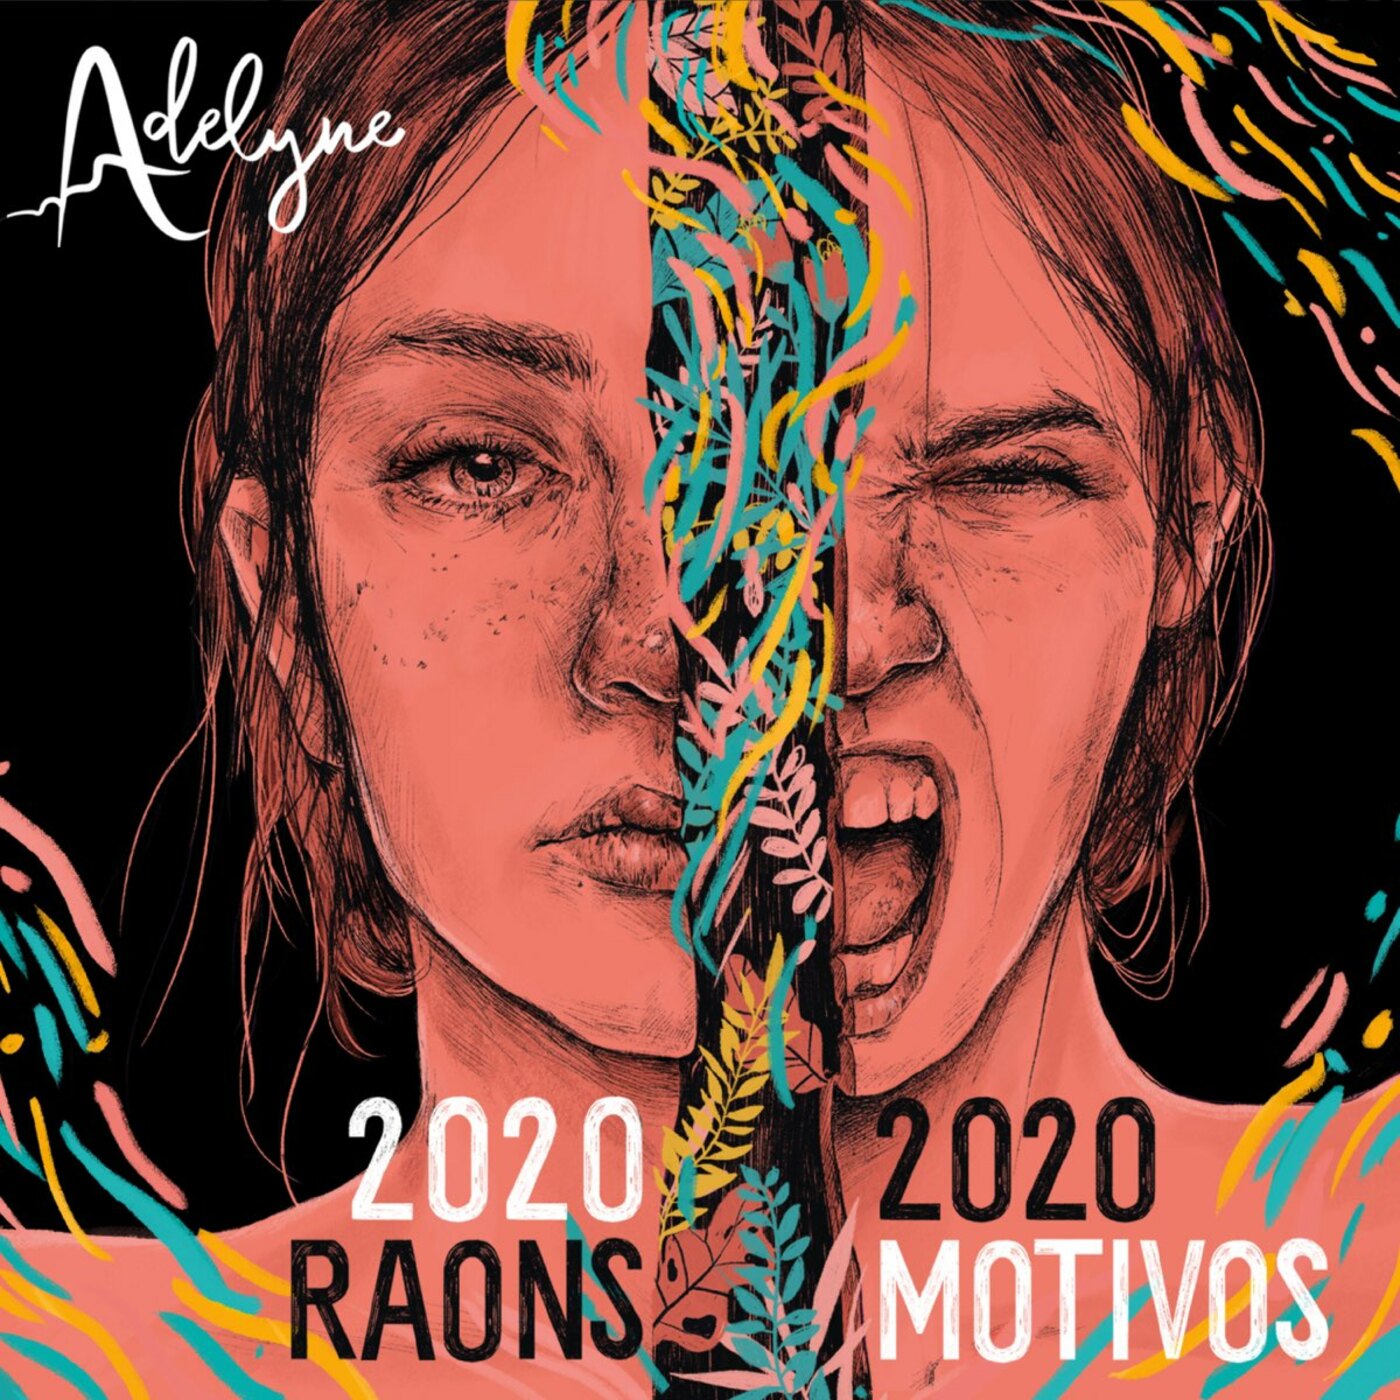 Adelyne - 2020 Raons | 2020 Motivos | musica en valencià